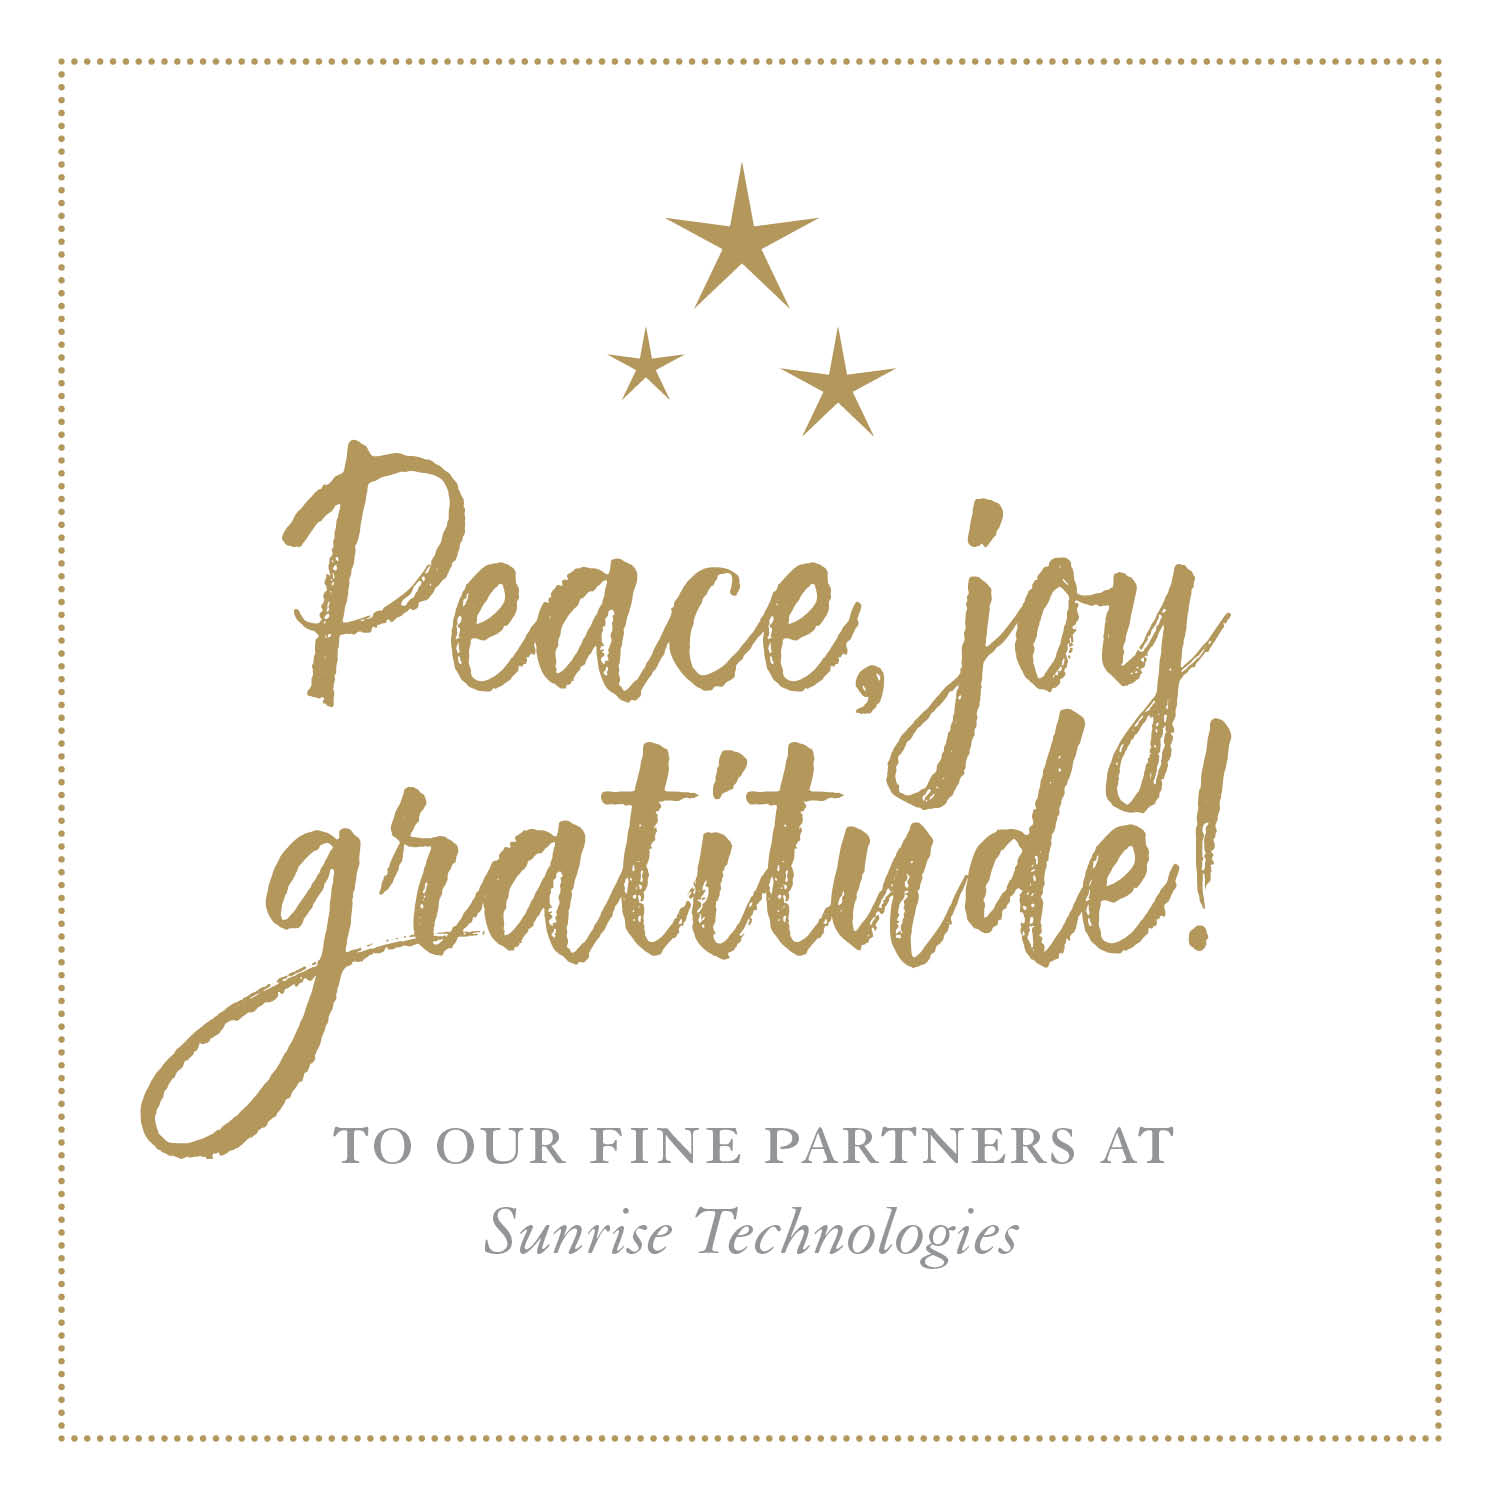 Peace, joy, gratitude!